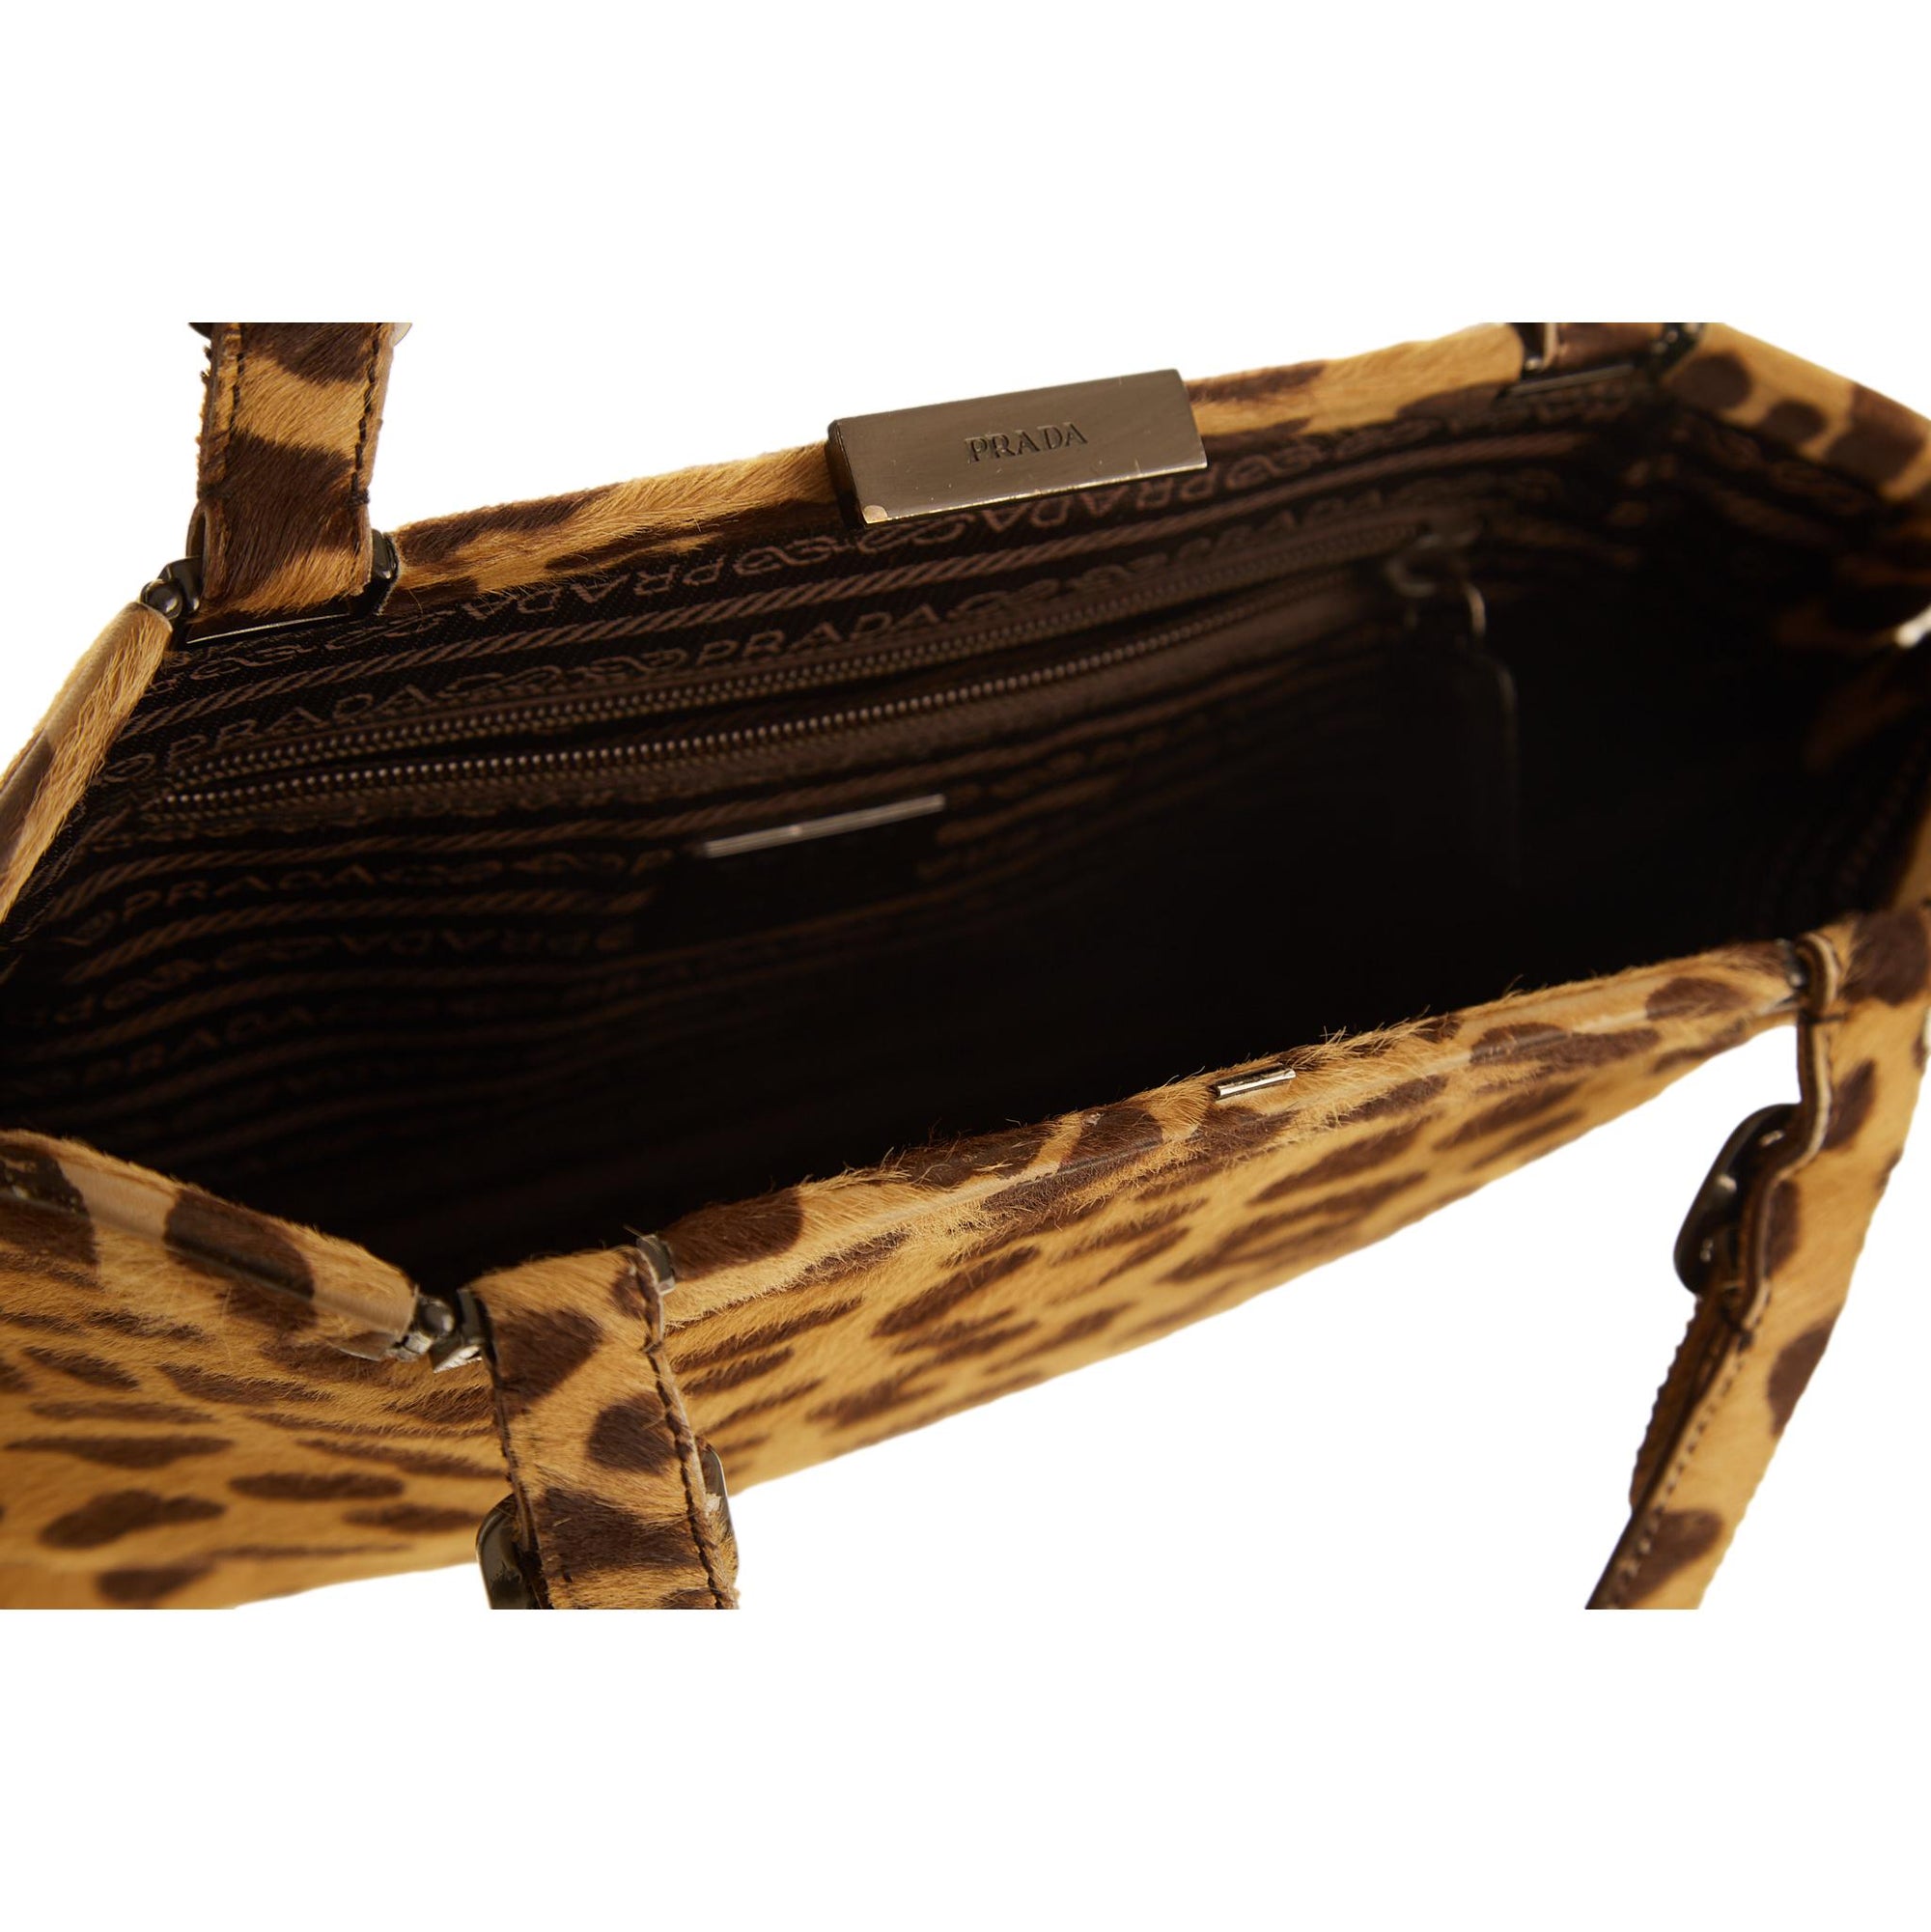 Prada Cheetah Print Shoulder Bag